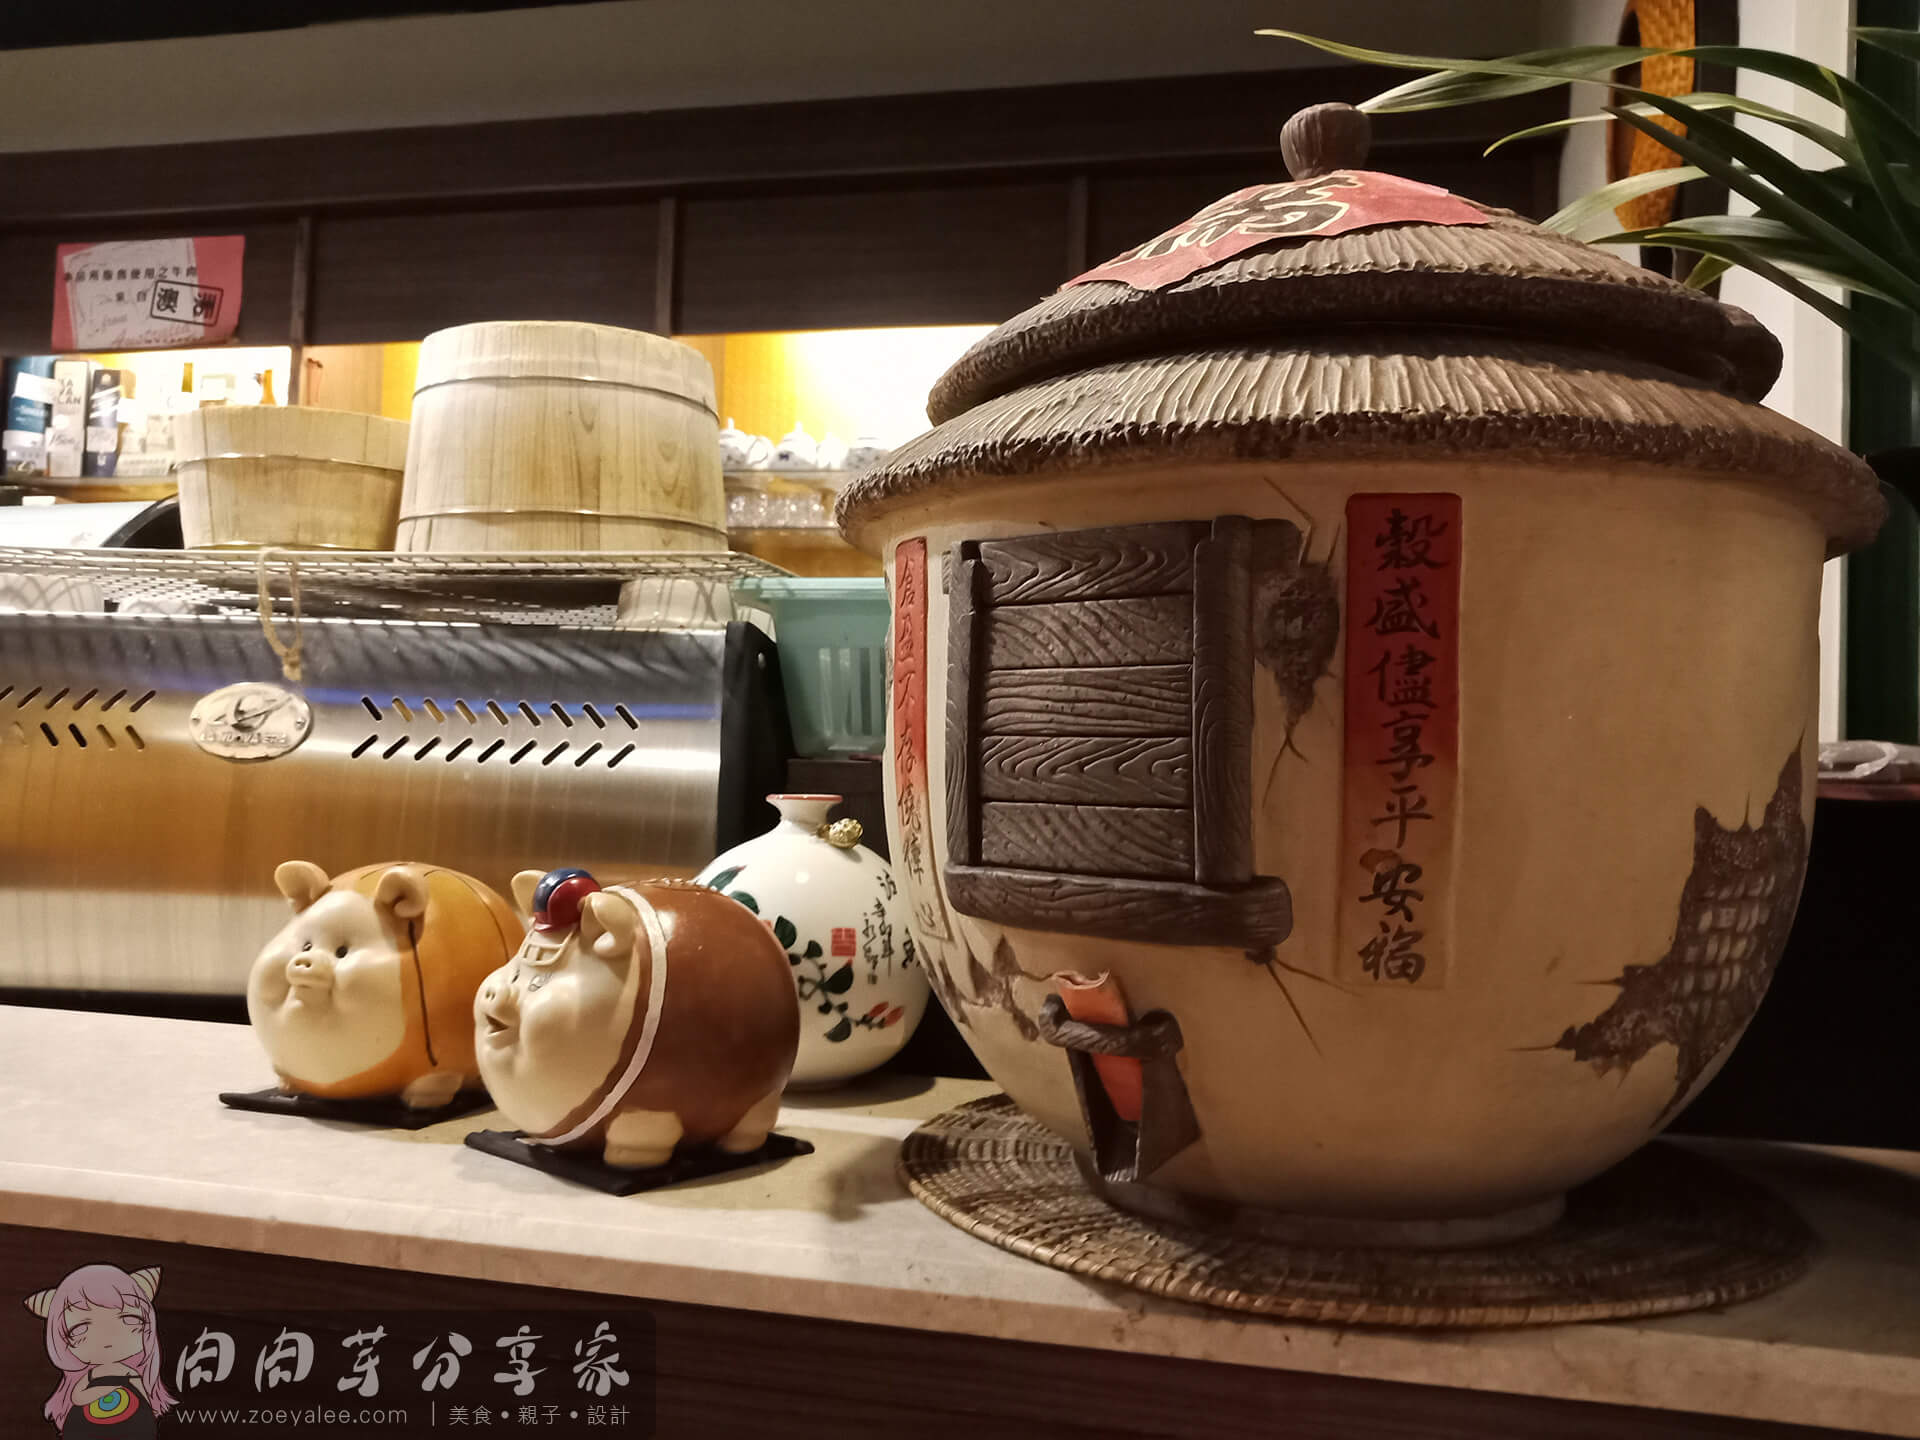 壹等賞景觀茶園餐廳店內擺設-傳統農家造型甕與小豬